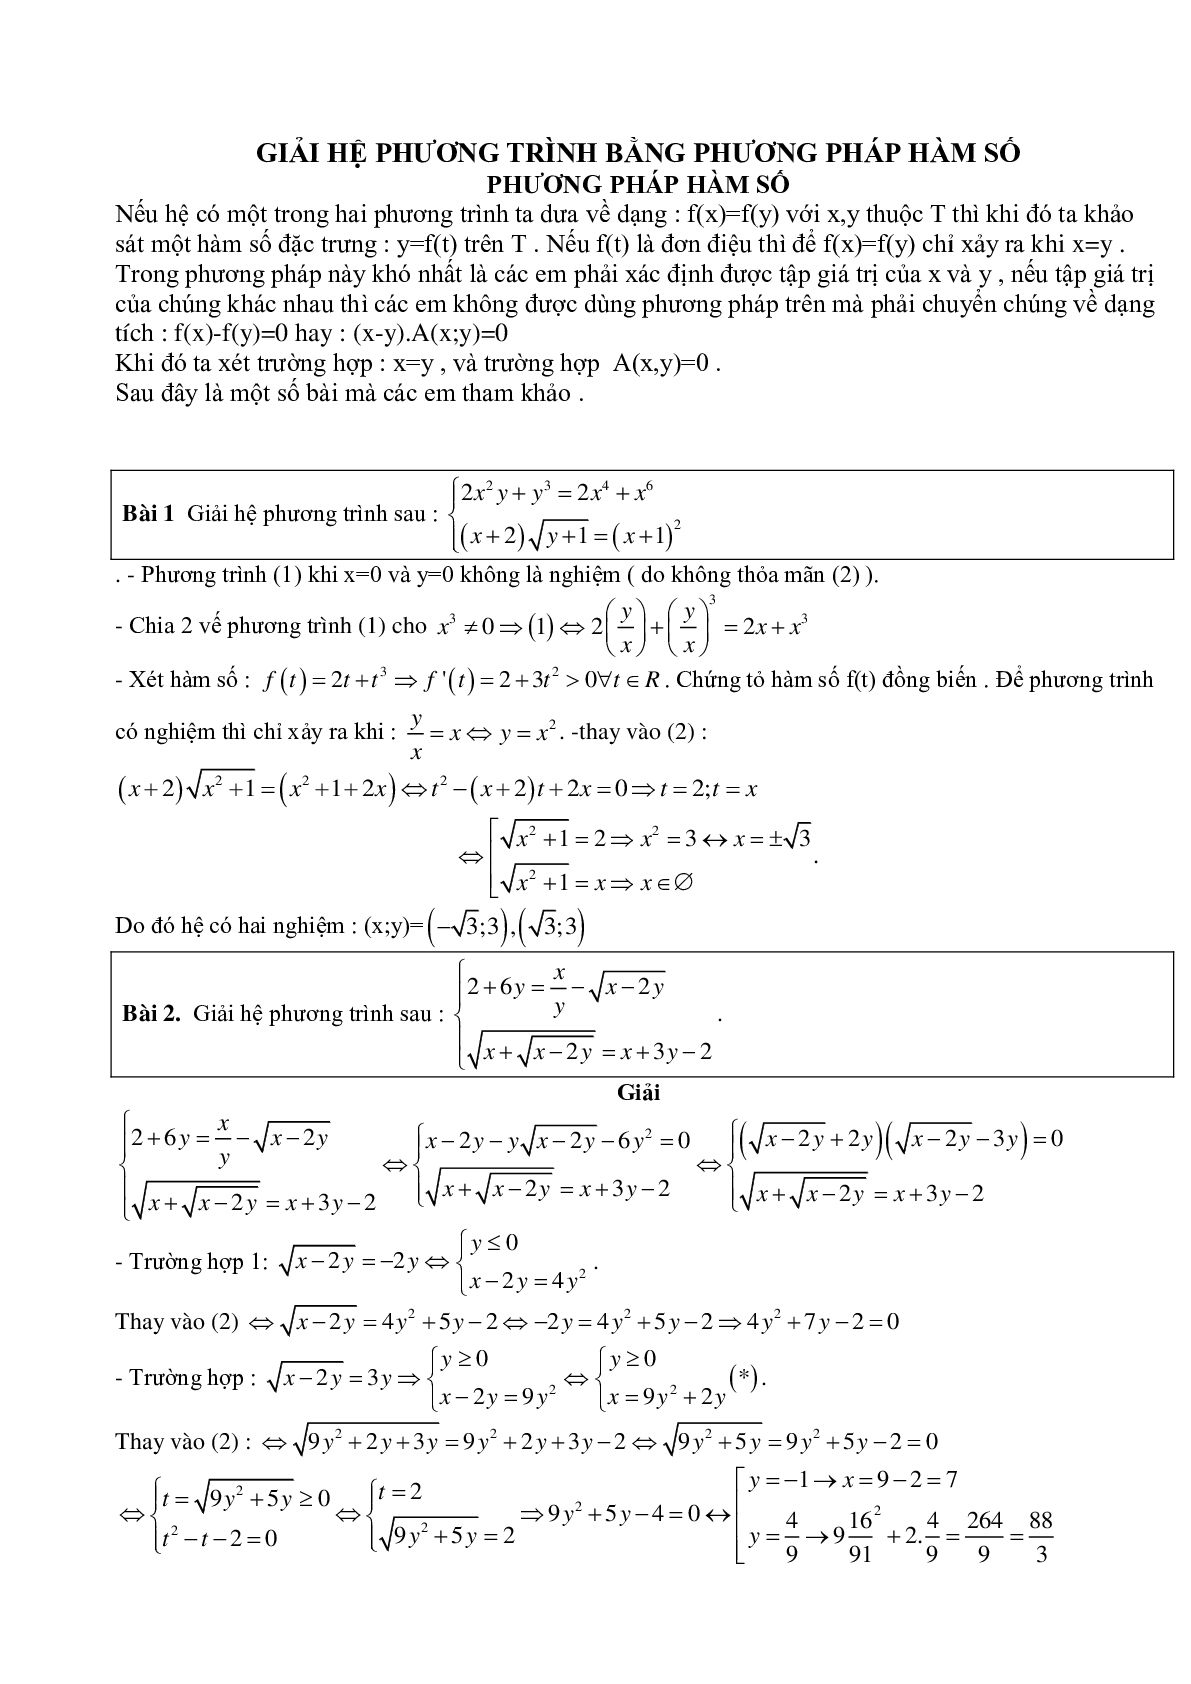 60 bài toán giải hệ phương trình bằng phương pháp hàm số điển hình (trang 1)